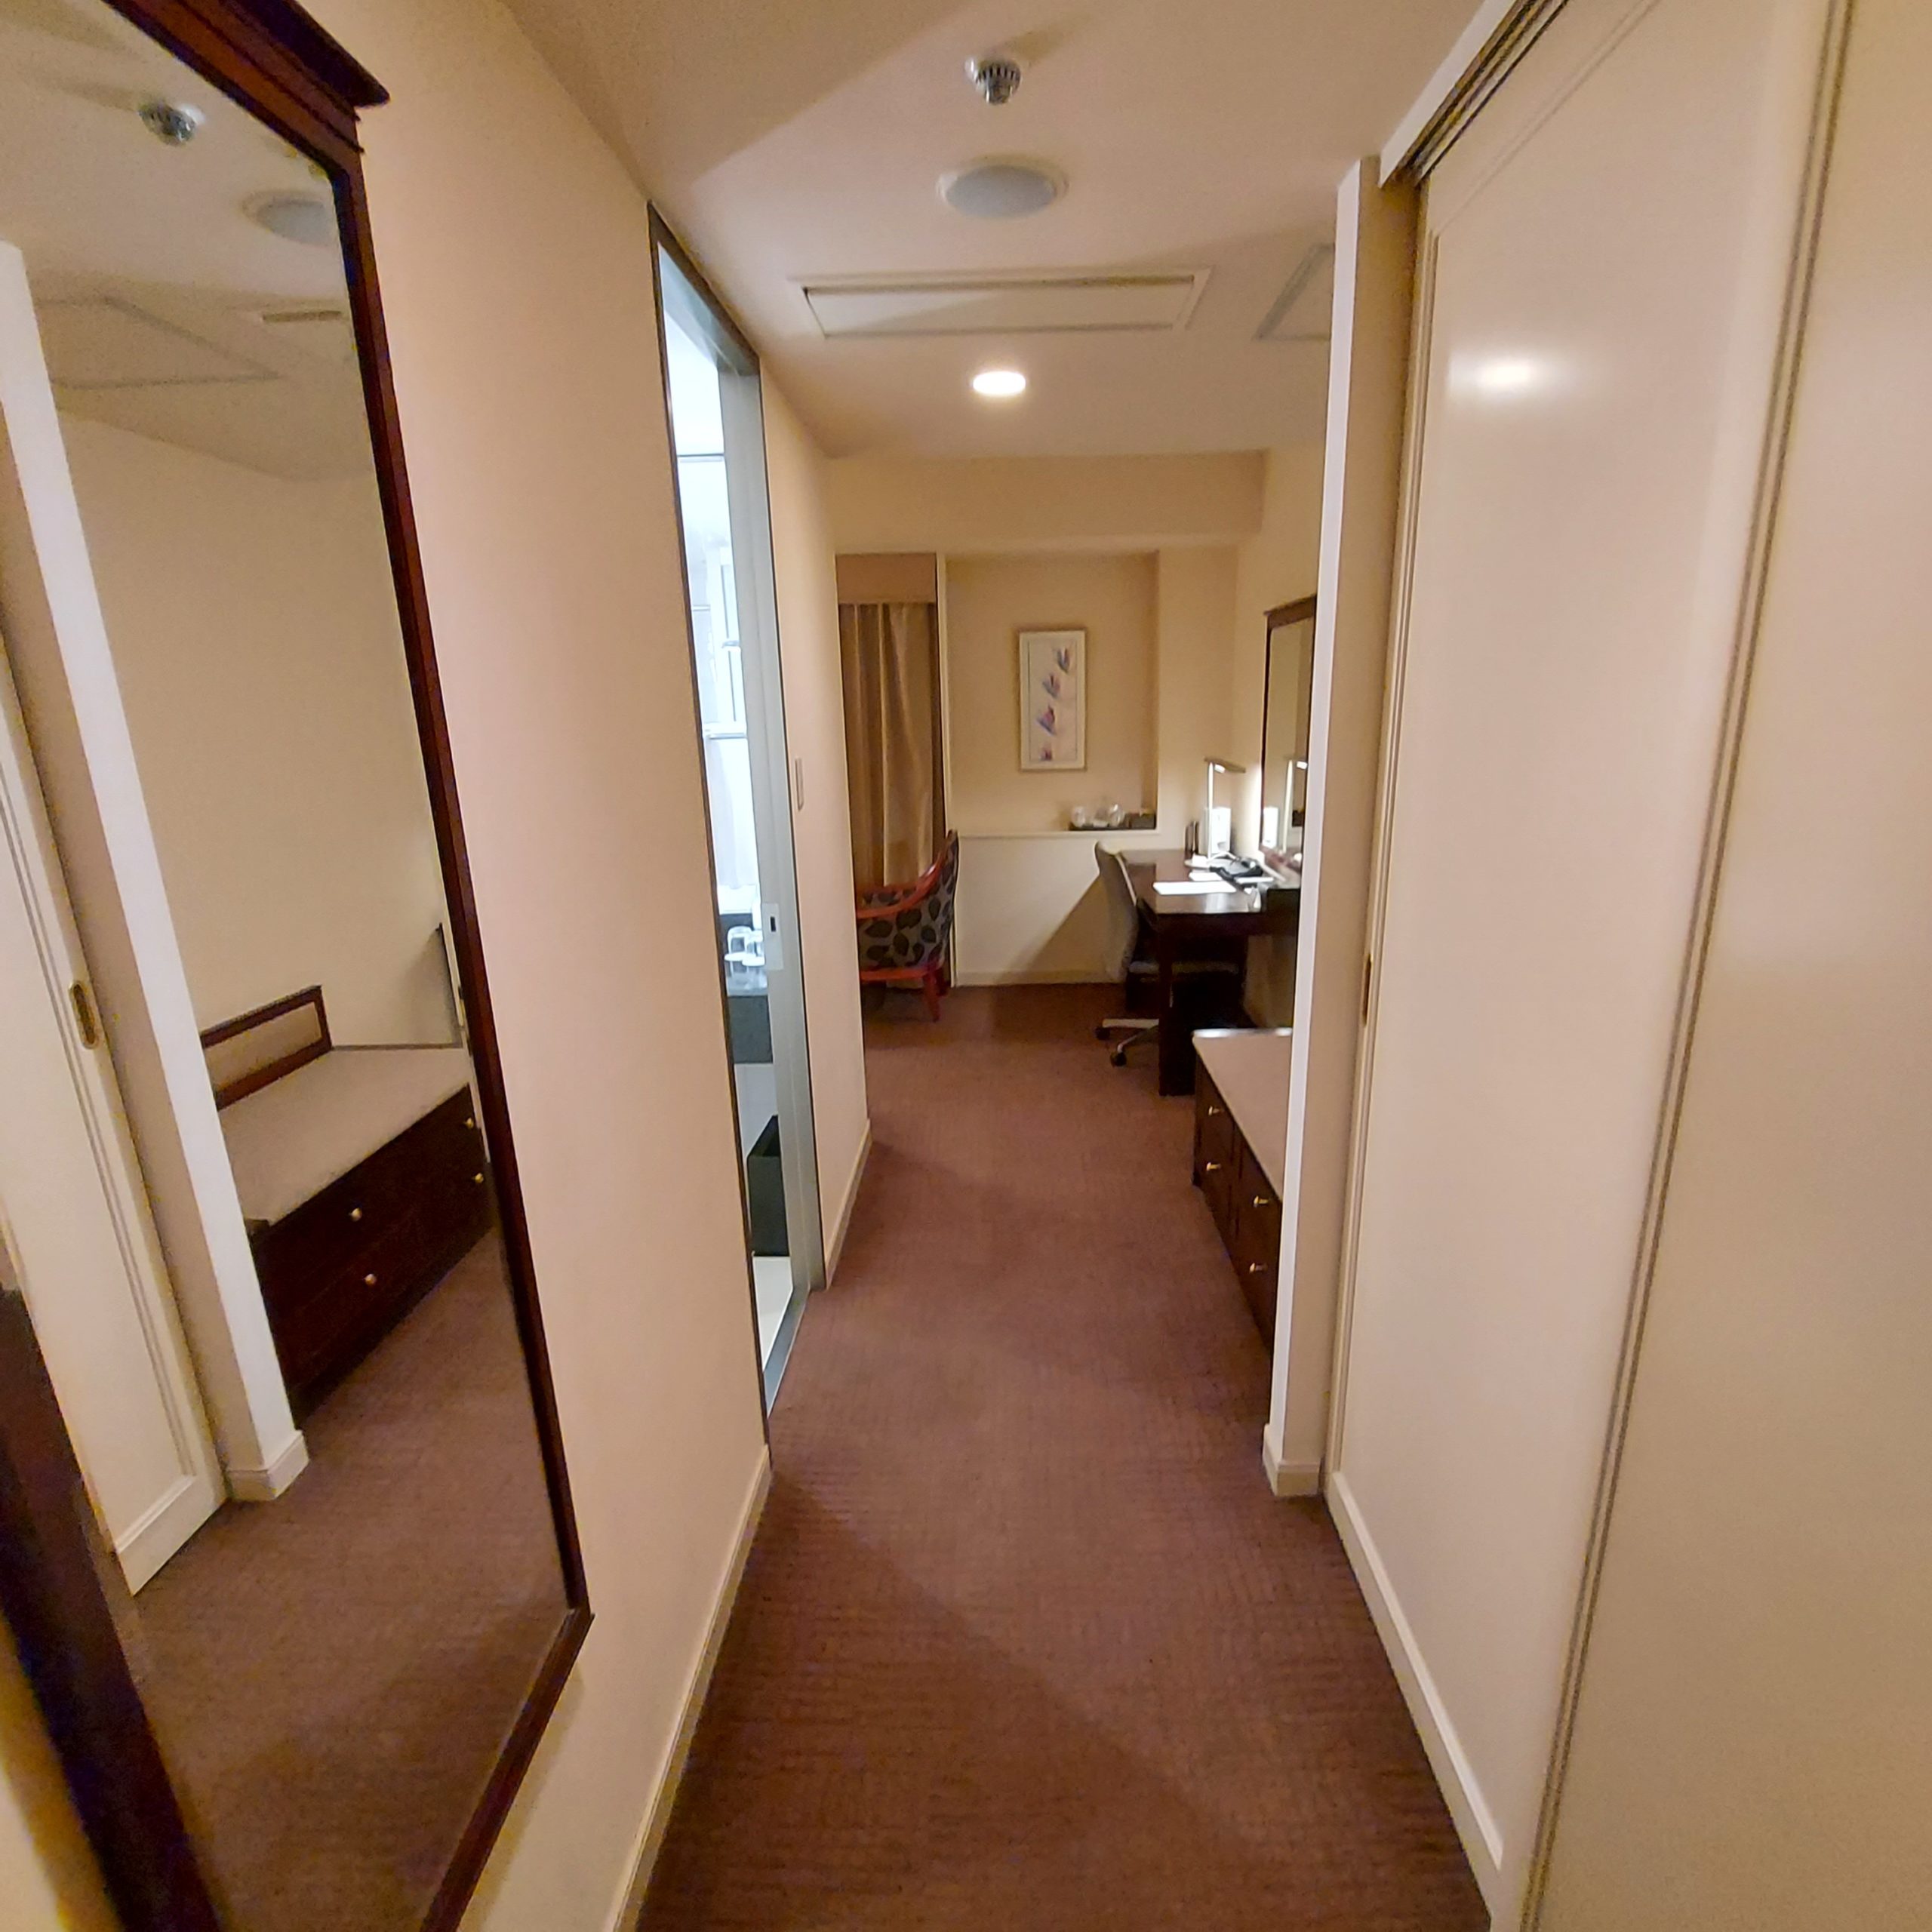 木製床の上に鏡がある部屋